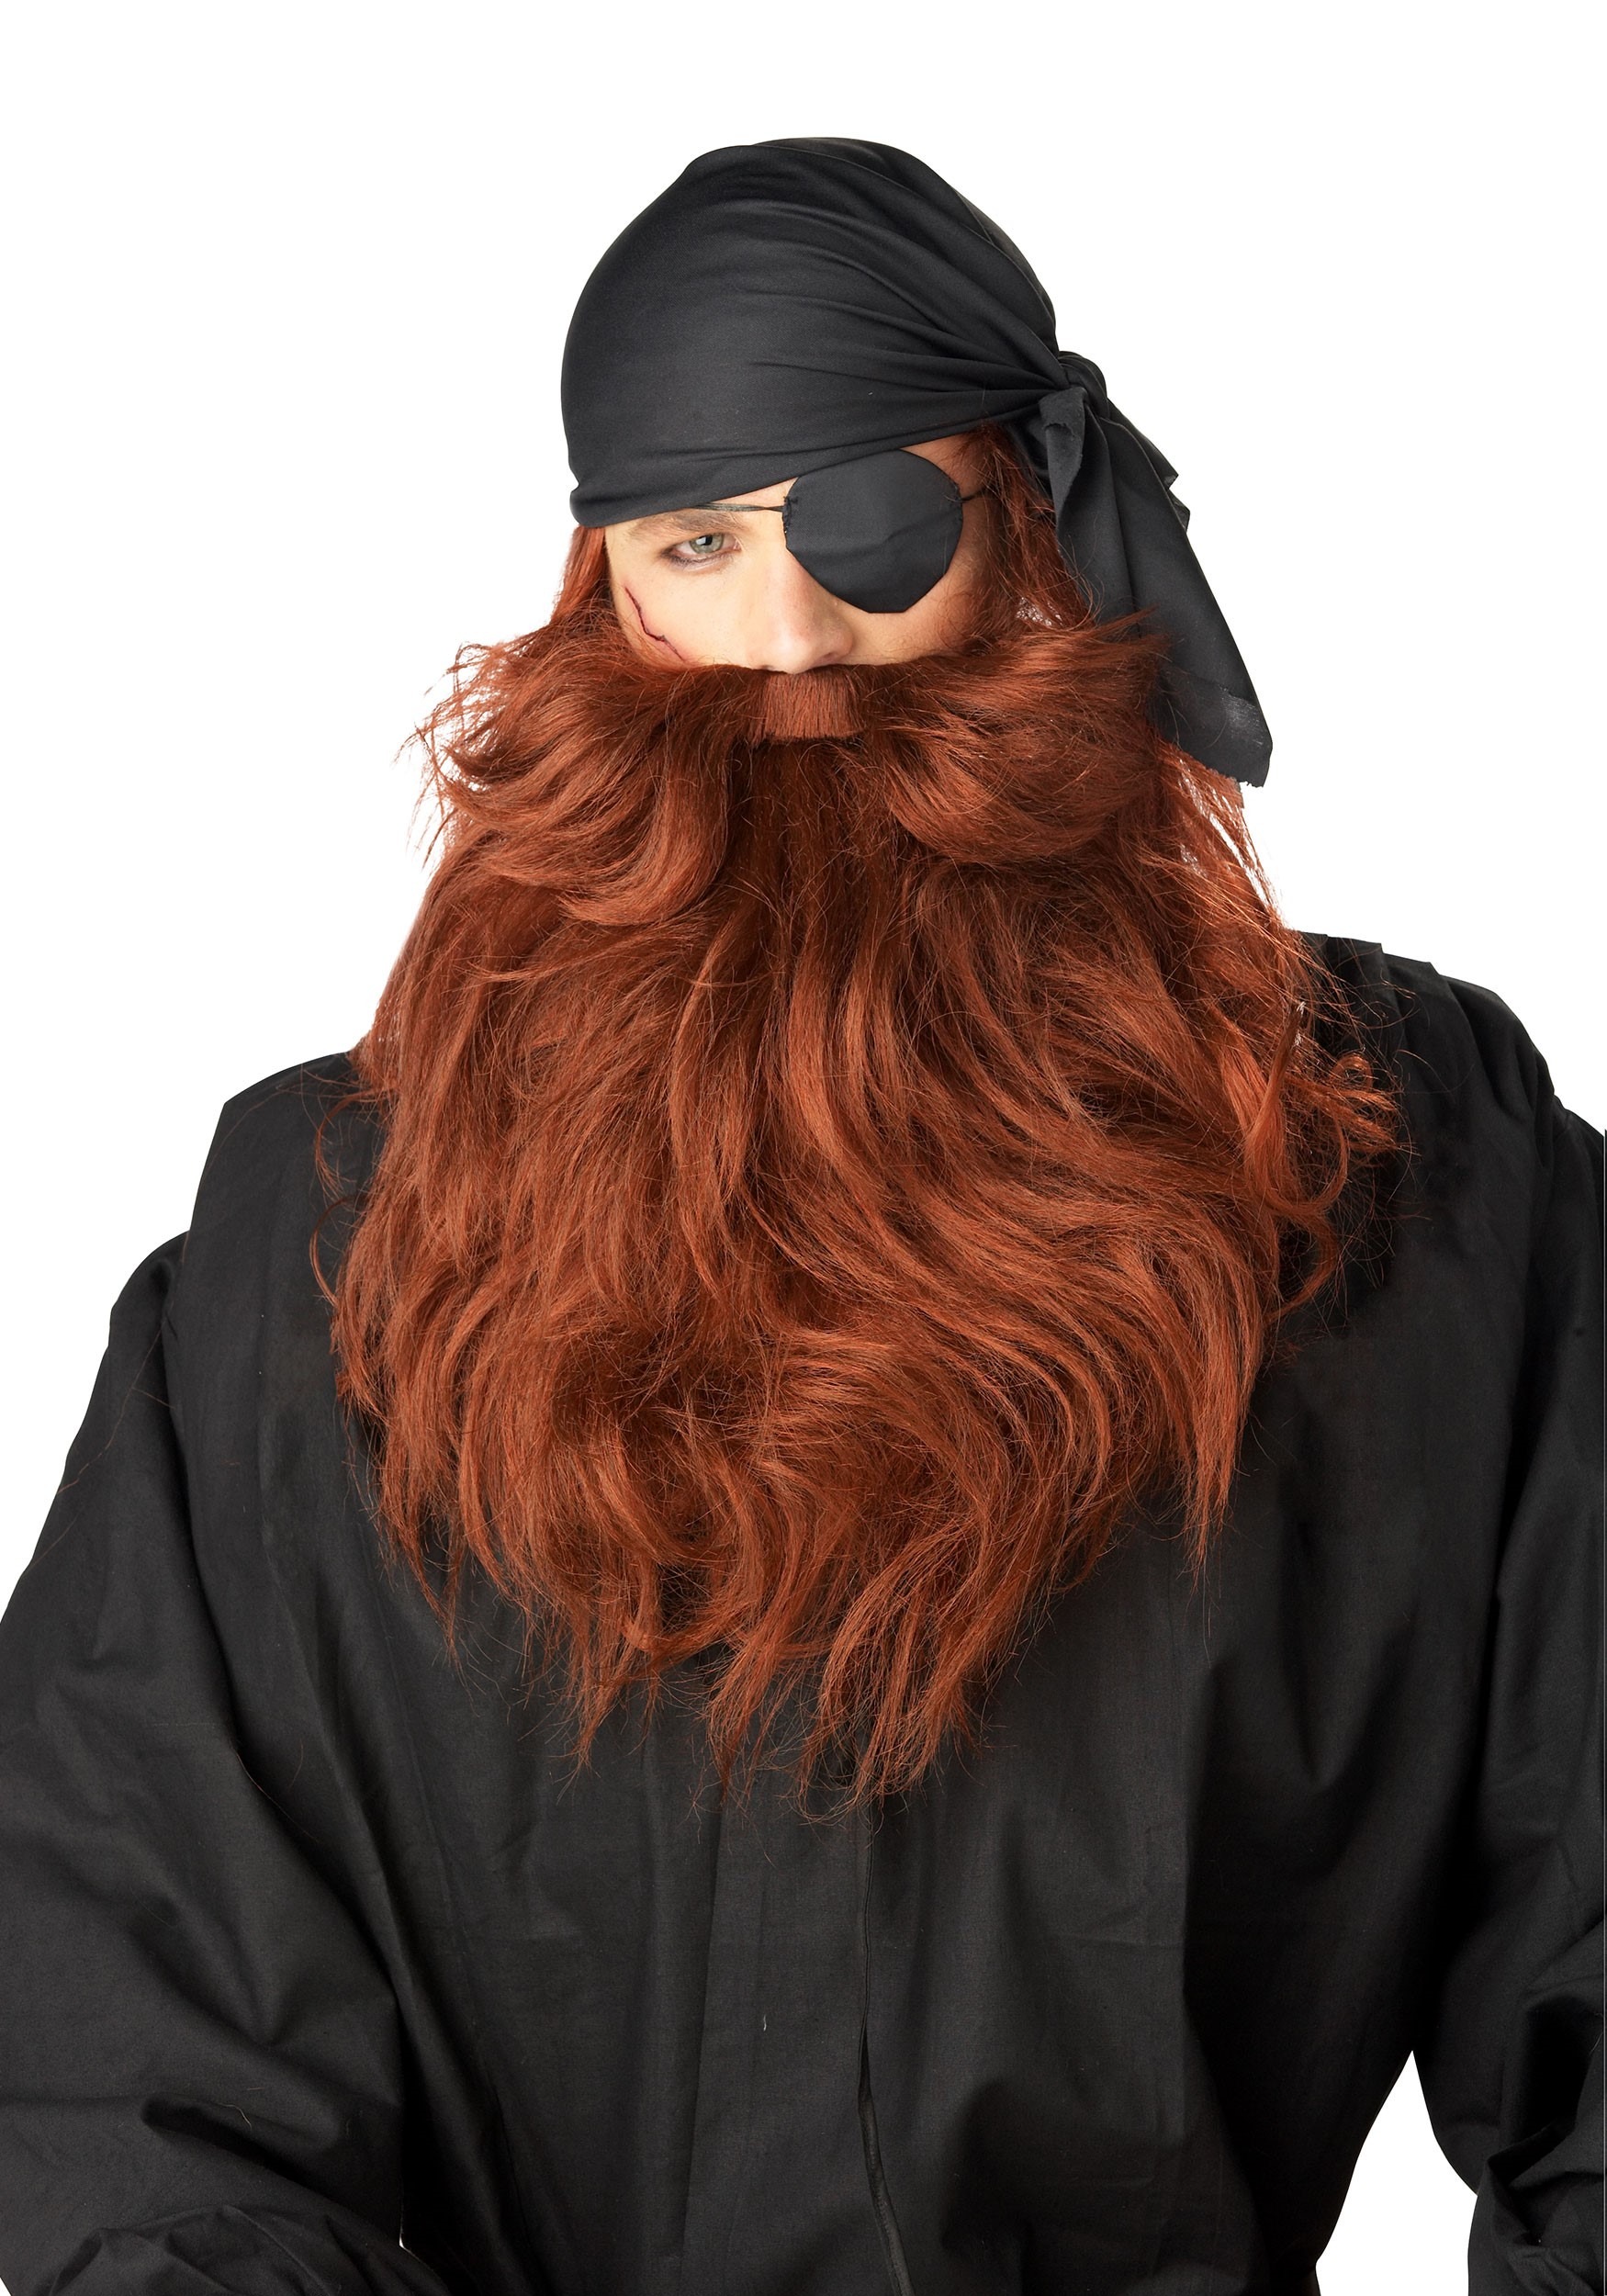 Details about   AC414 The Captain Pirate Sparrow Buccaneer Mens Costume Beard & Moustache Set 